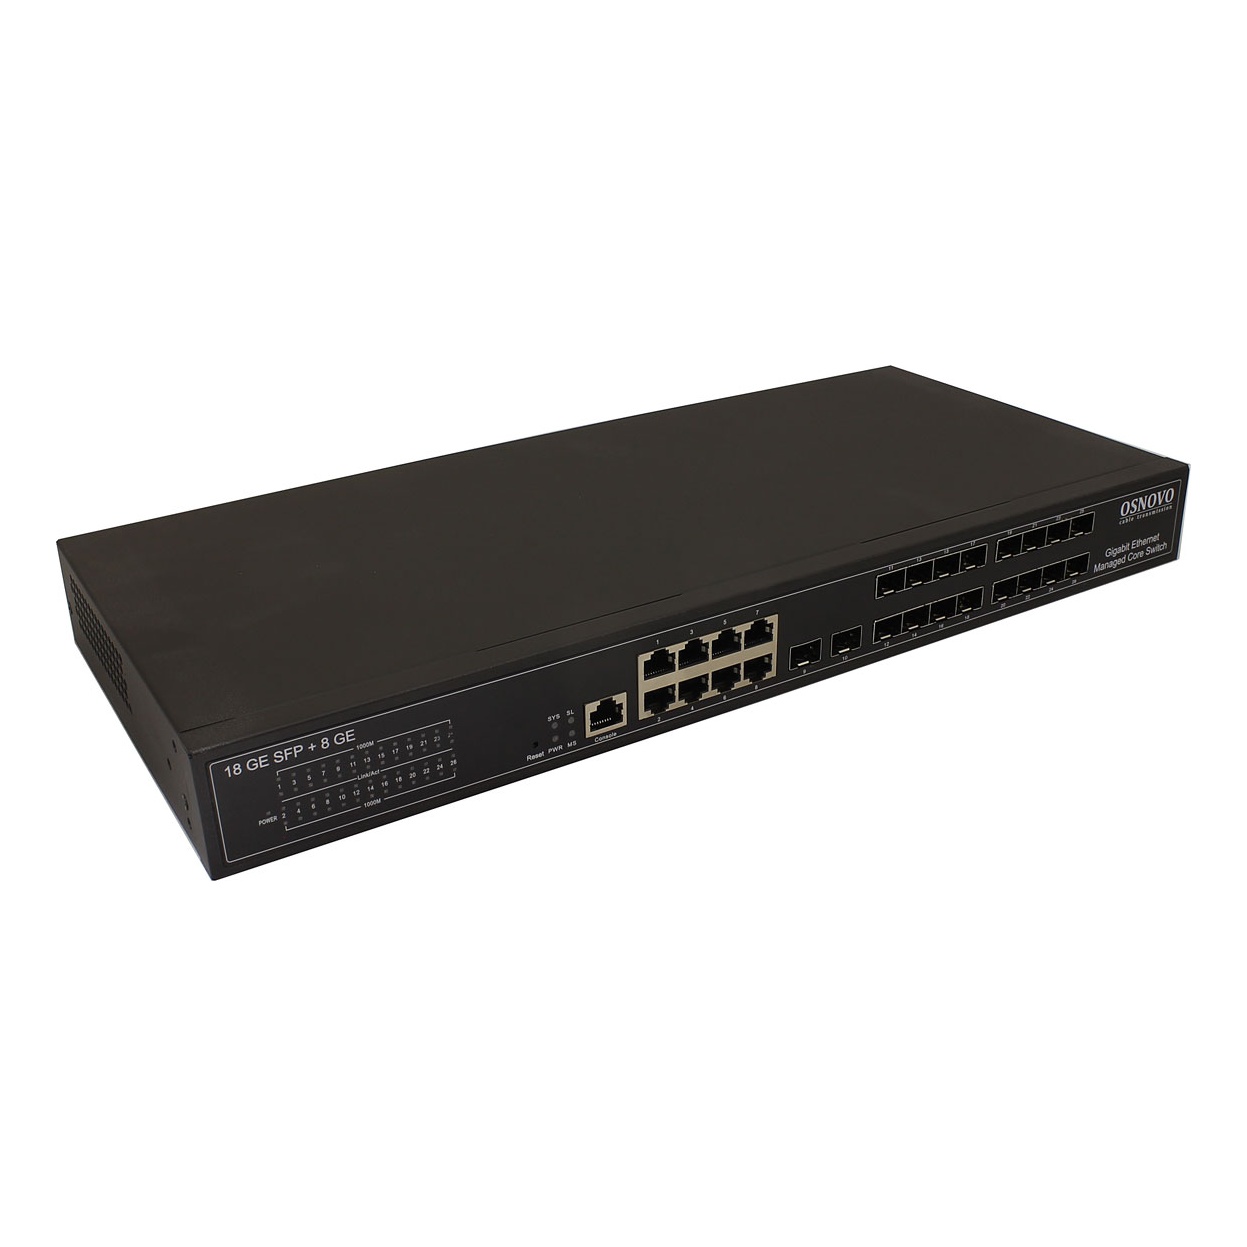 OSNOVO SW-70818/L2 SW-70818/L2 Управляемый L2+ коммутатор Gigabit Ethernet на 18 x GE SFP + 8 x GE RJ45 портов